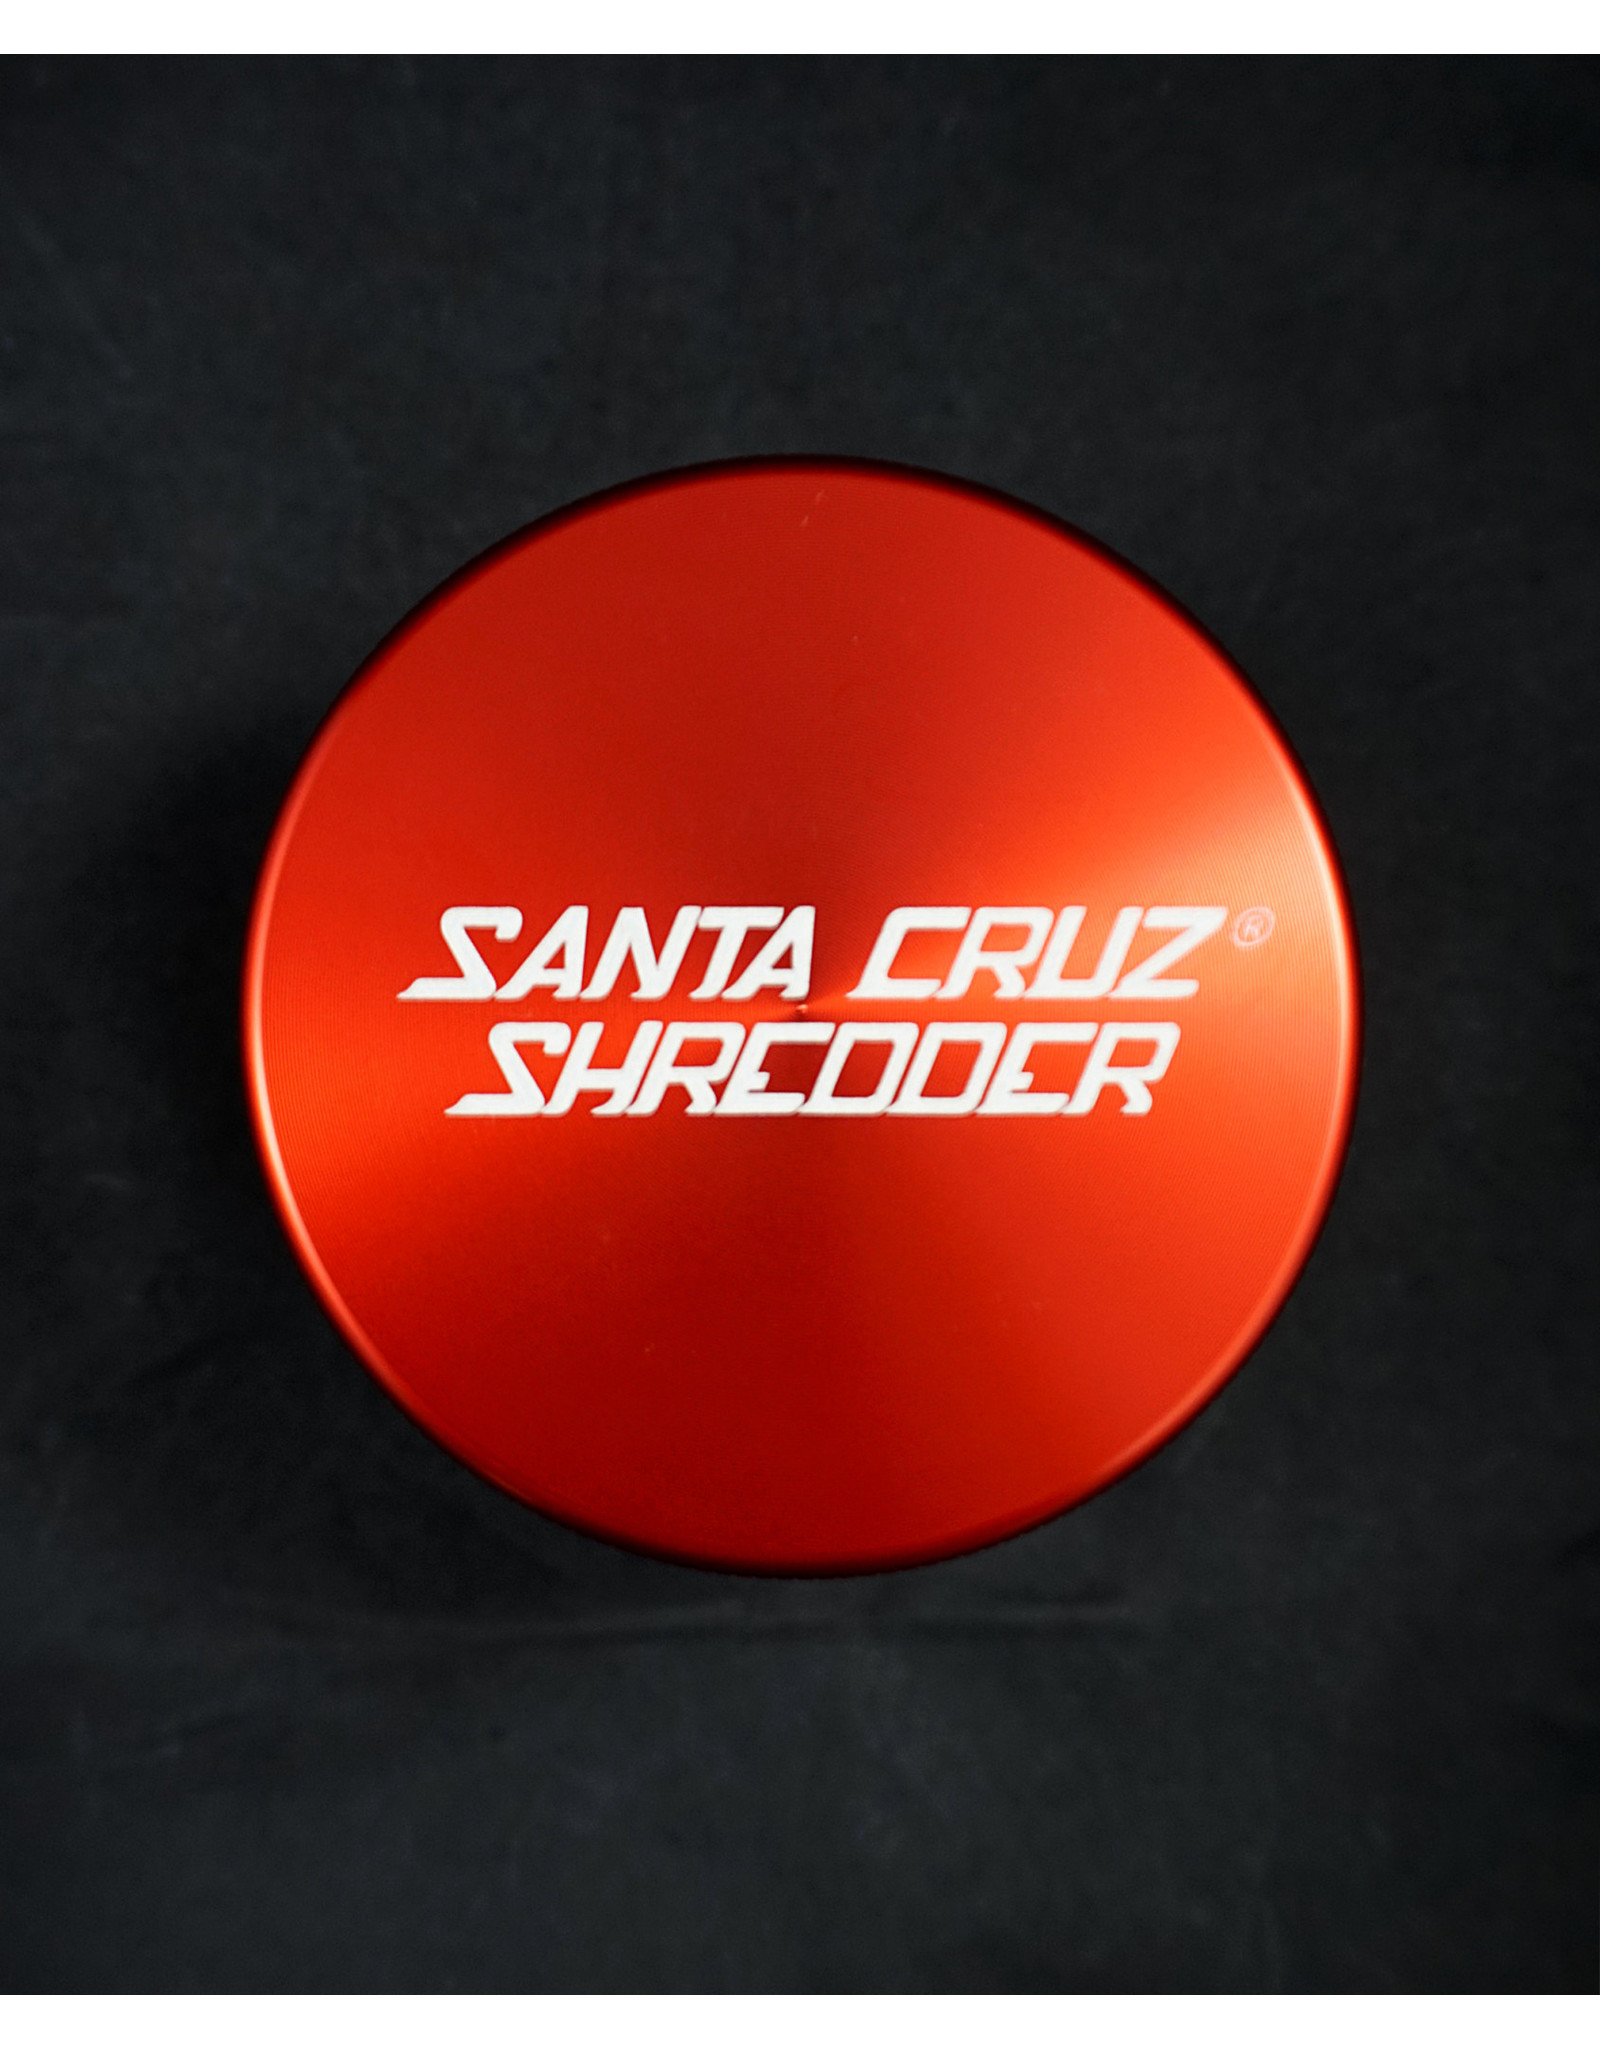 Santa Cruz Santa Cruz Shredder 4pc Large Rasta